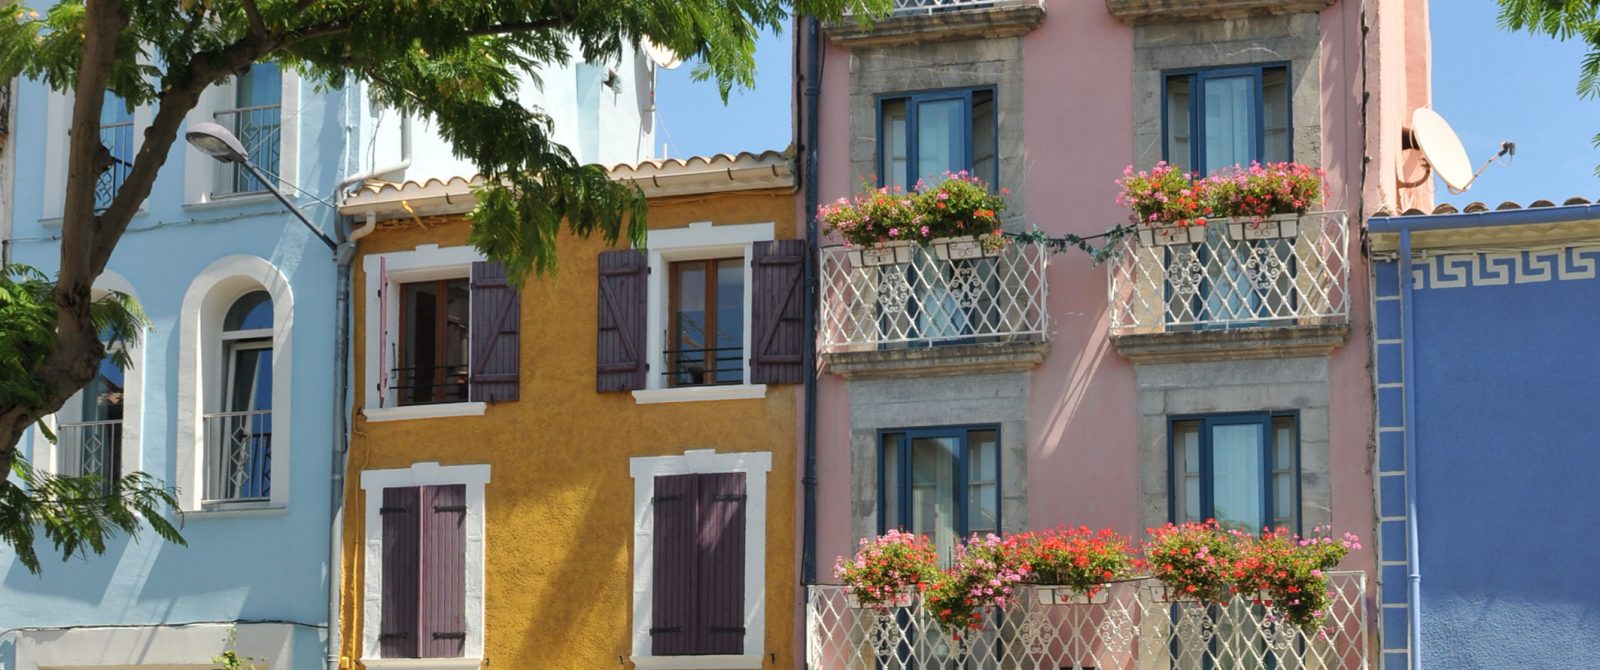 Les façades colorées de Leucate Village©J. Bellondrade - OT de Leucate